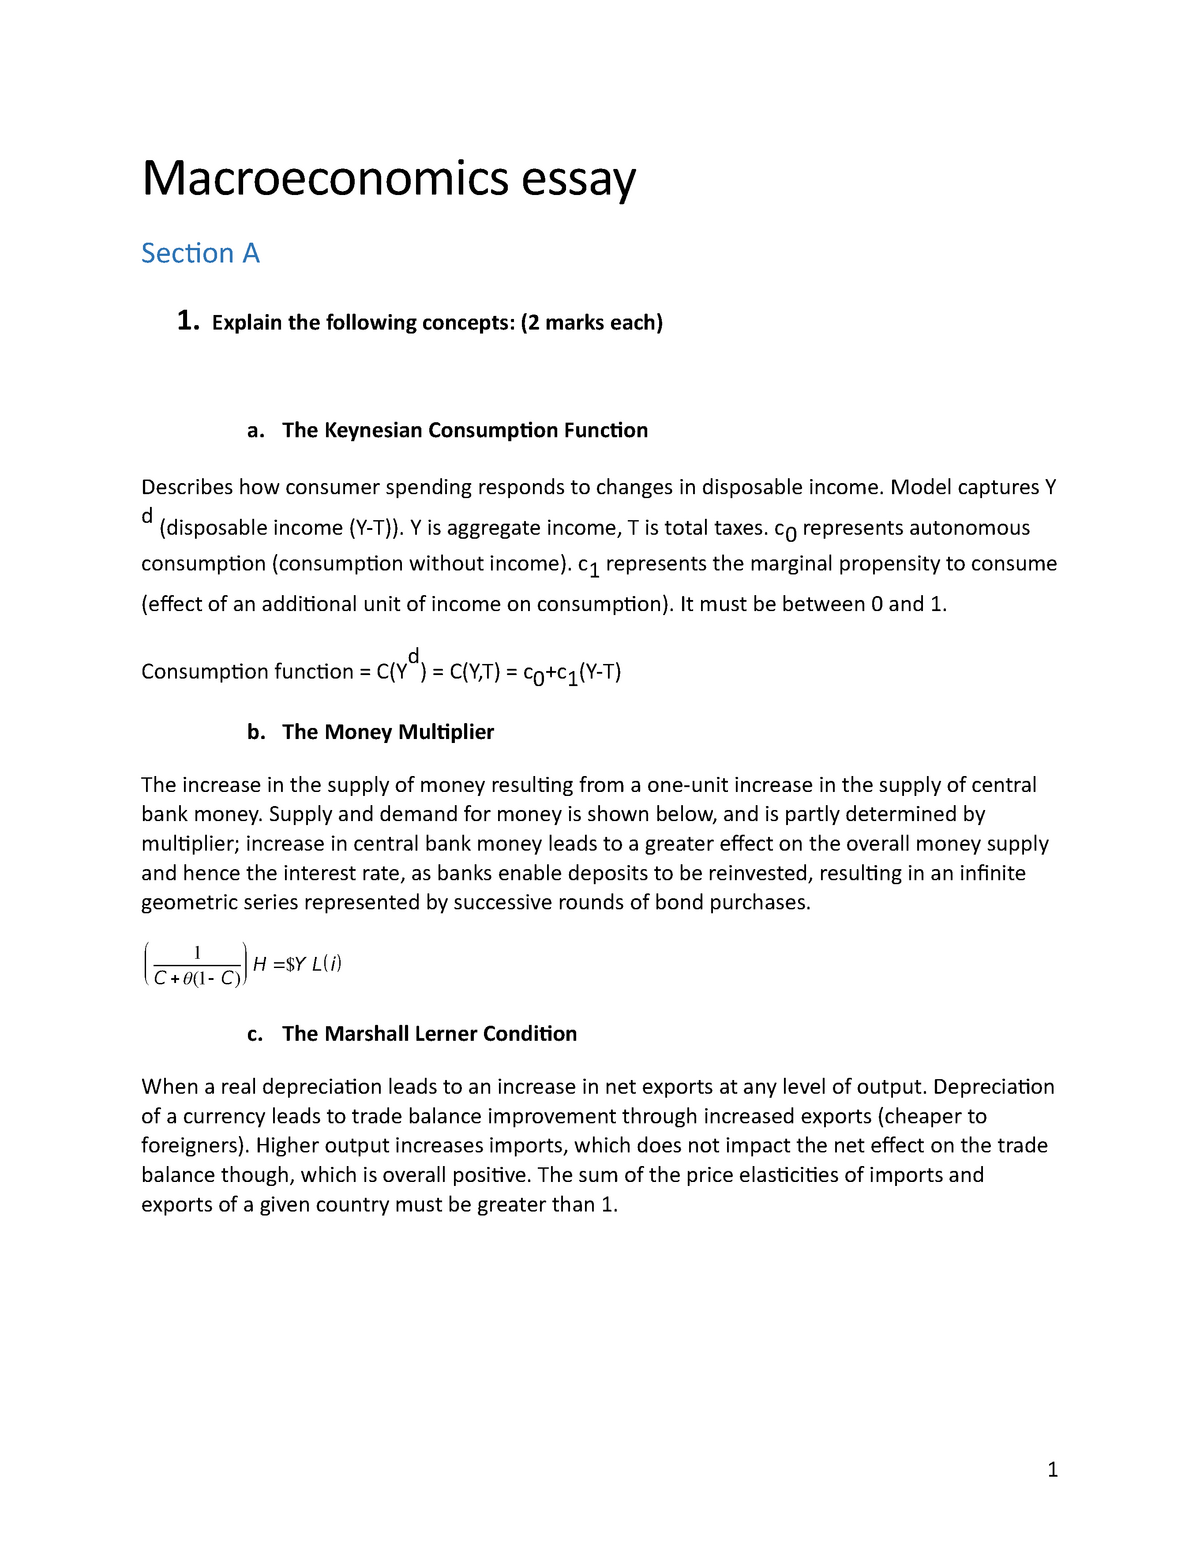 macroeconomics essay papers